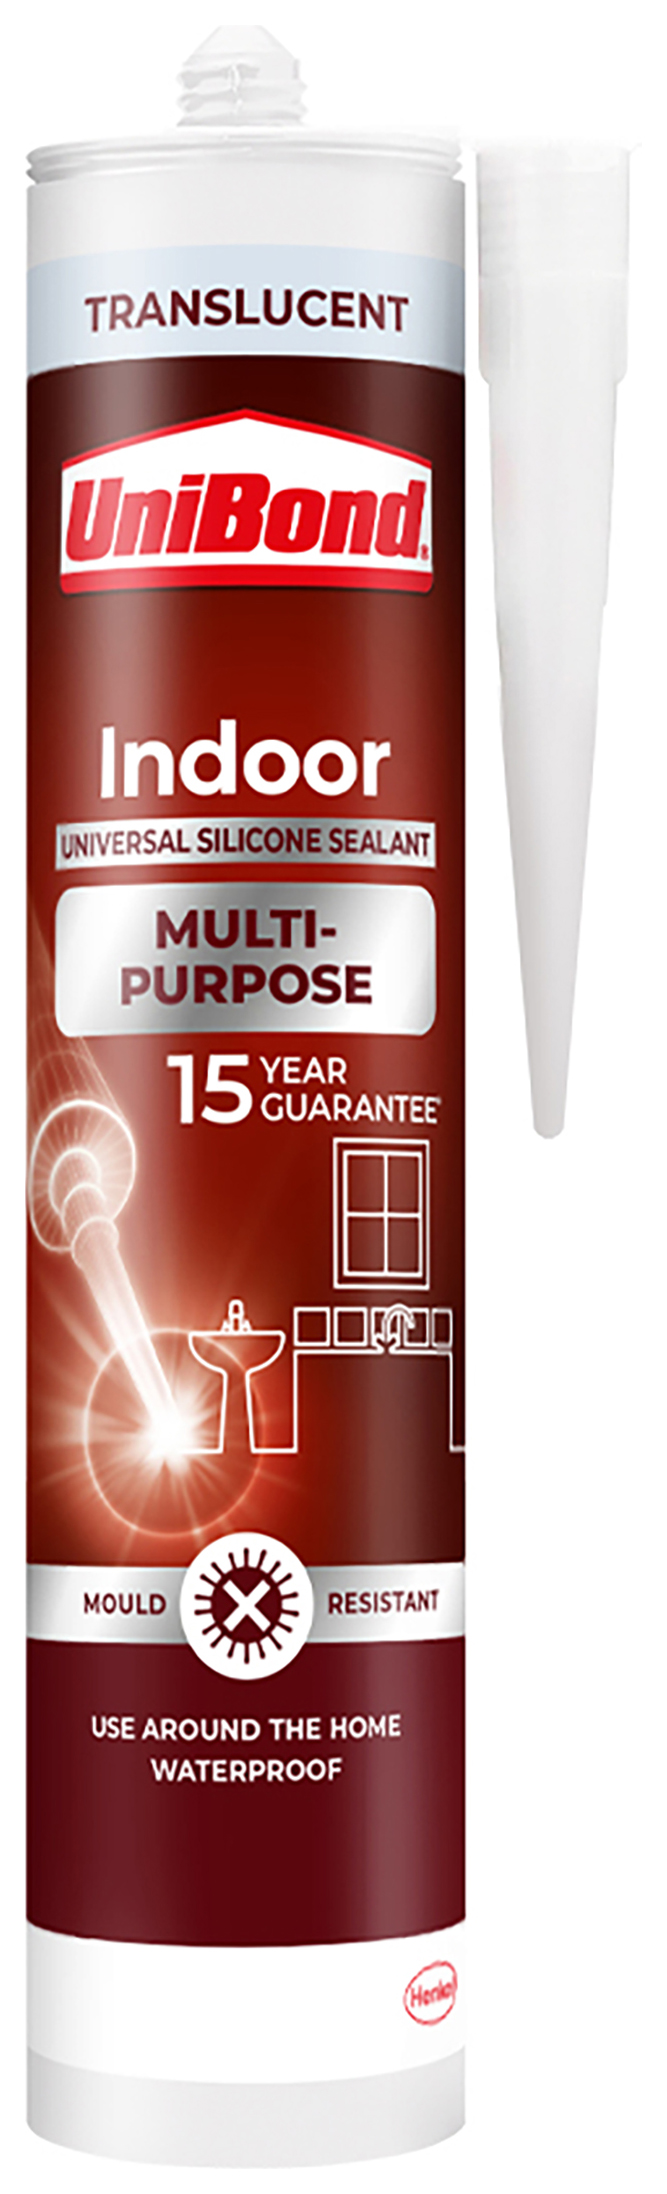 UniBond Multi Purpose Translucent Sealant - 274g